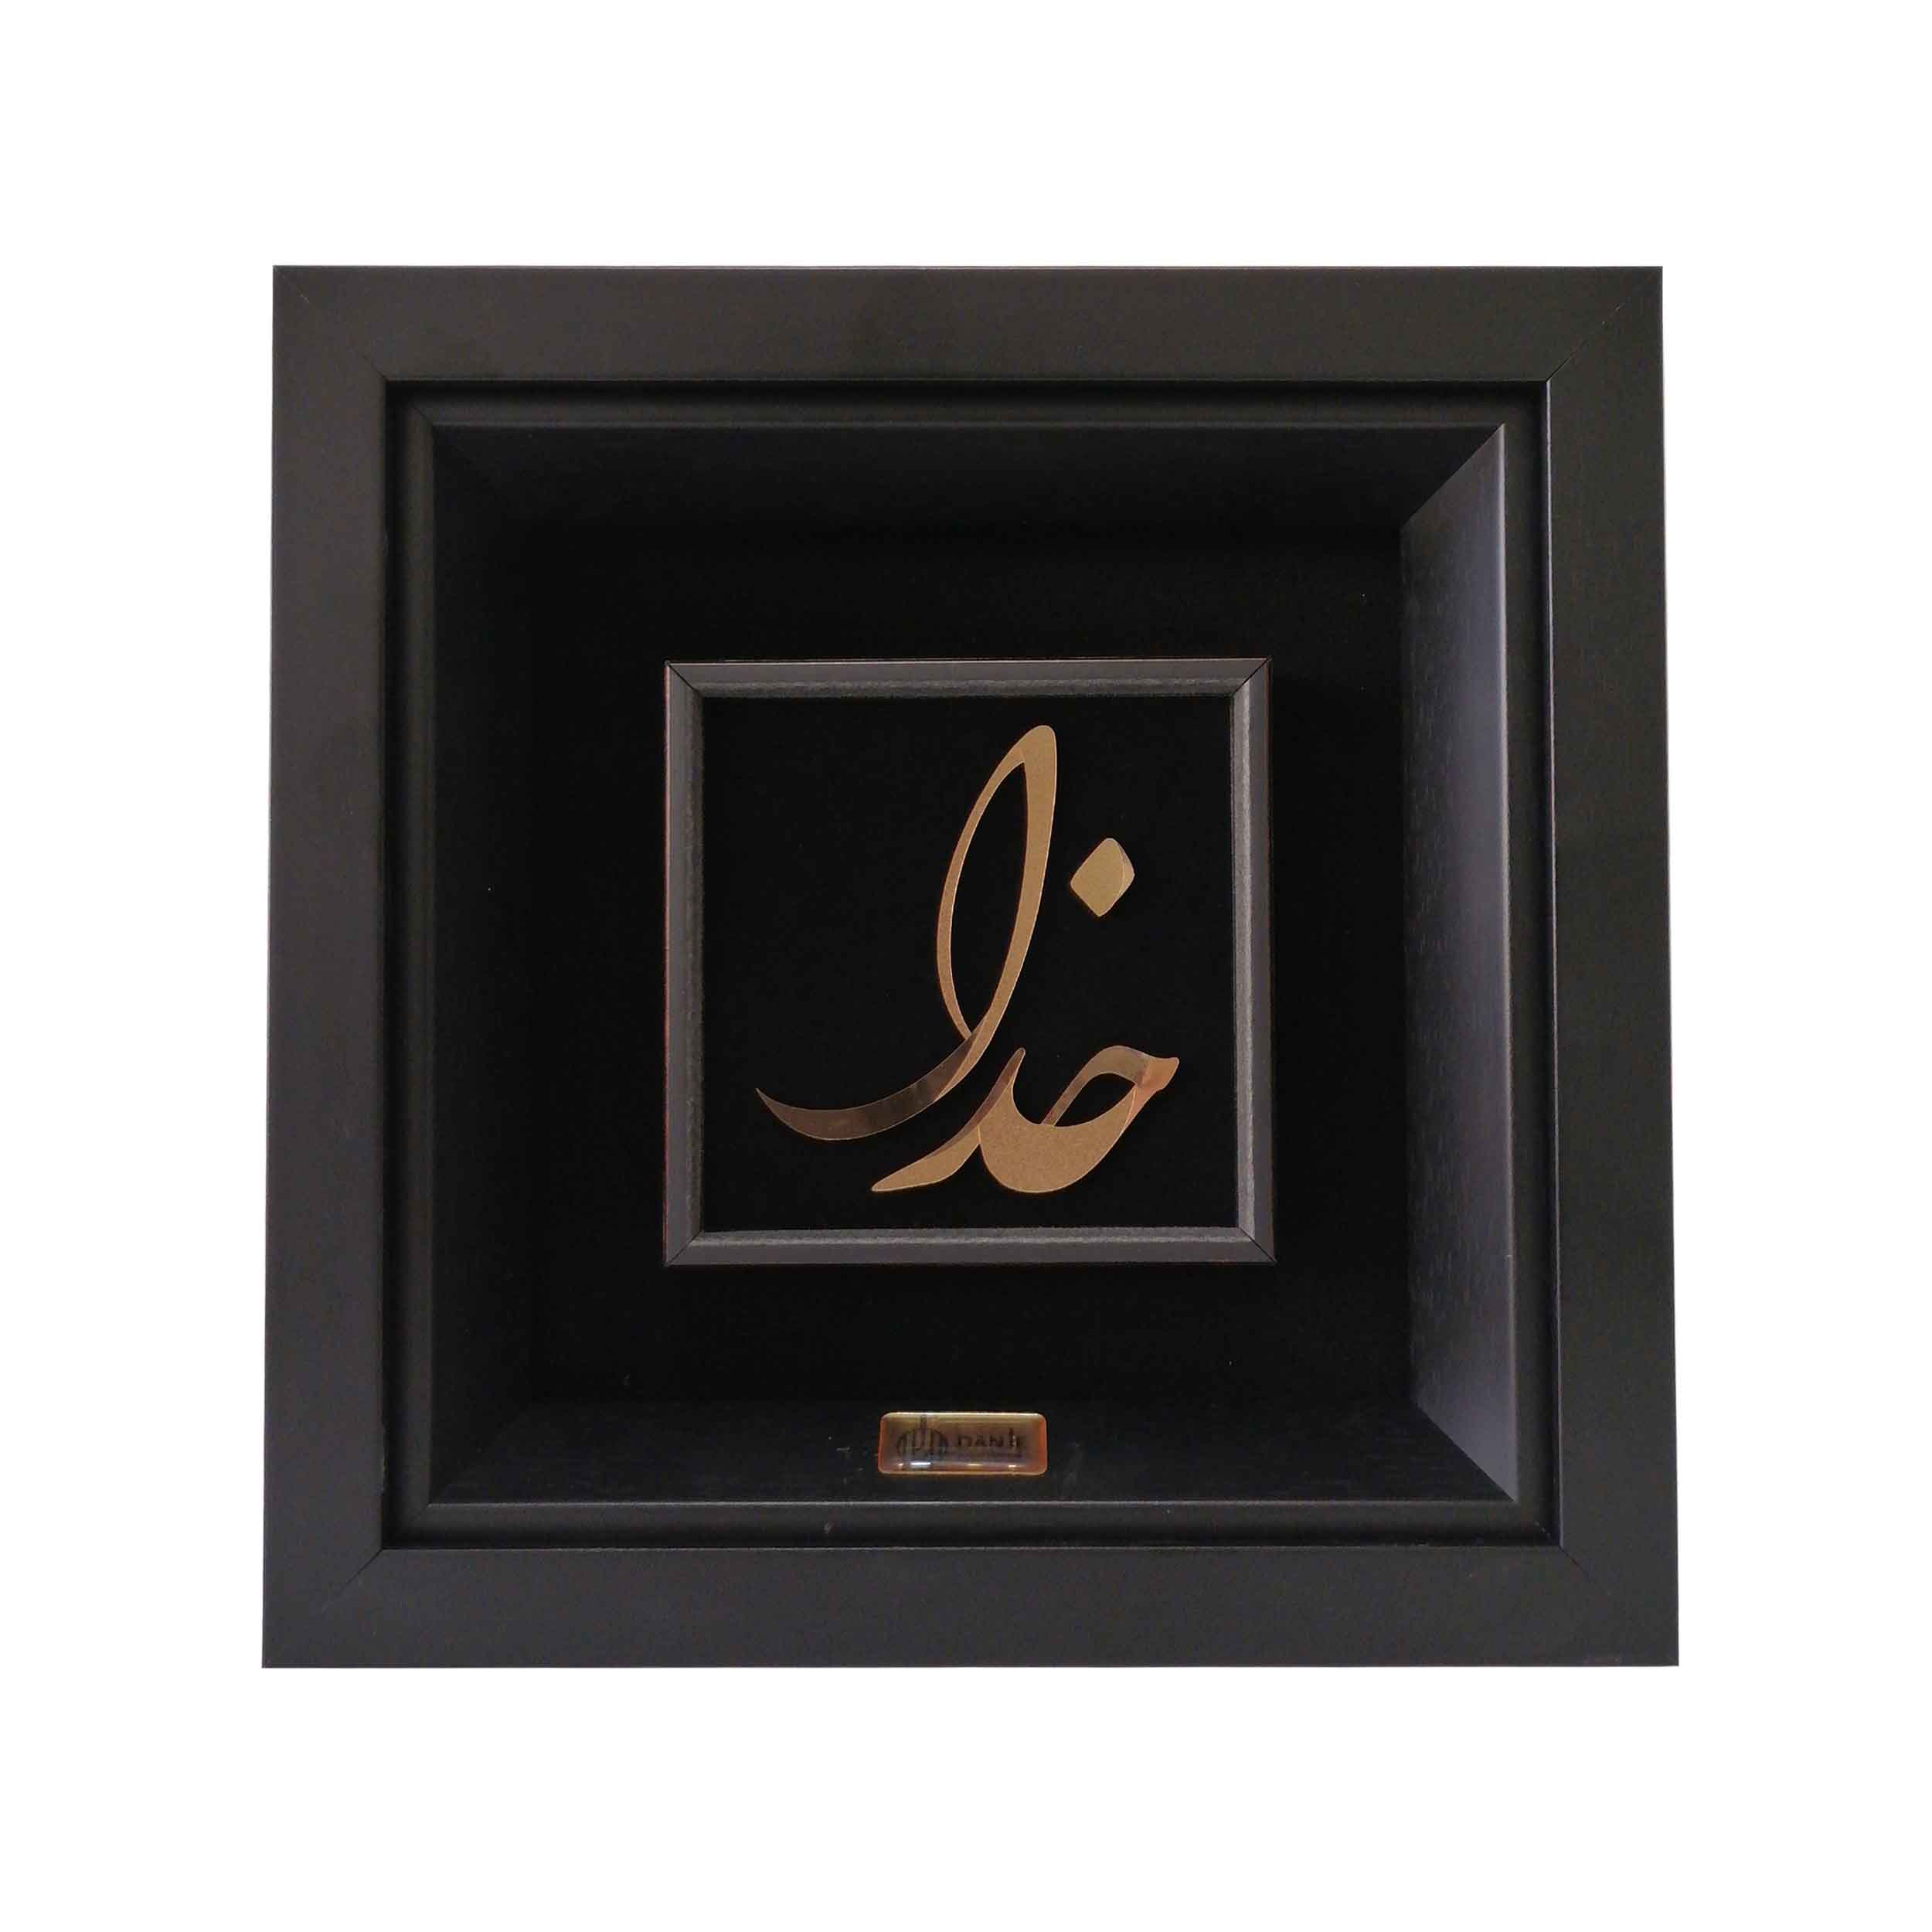 24 carat gold leaf panel with PVC frame, designed by God, Danjeh brand